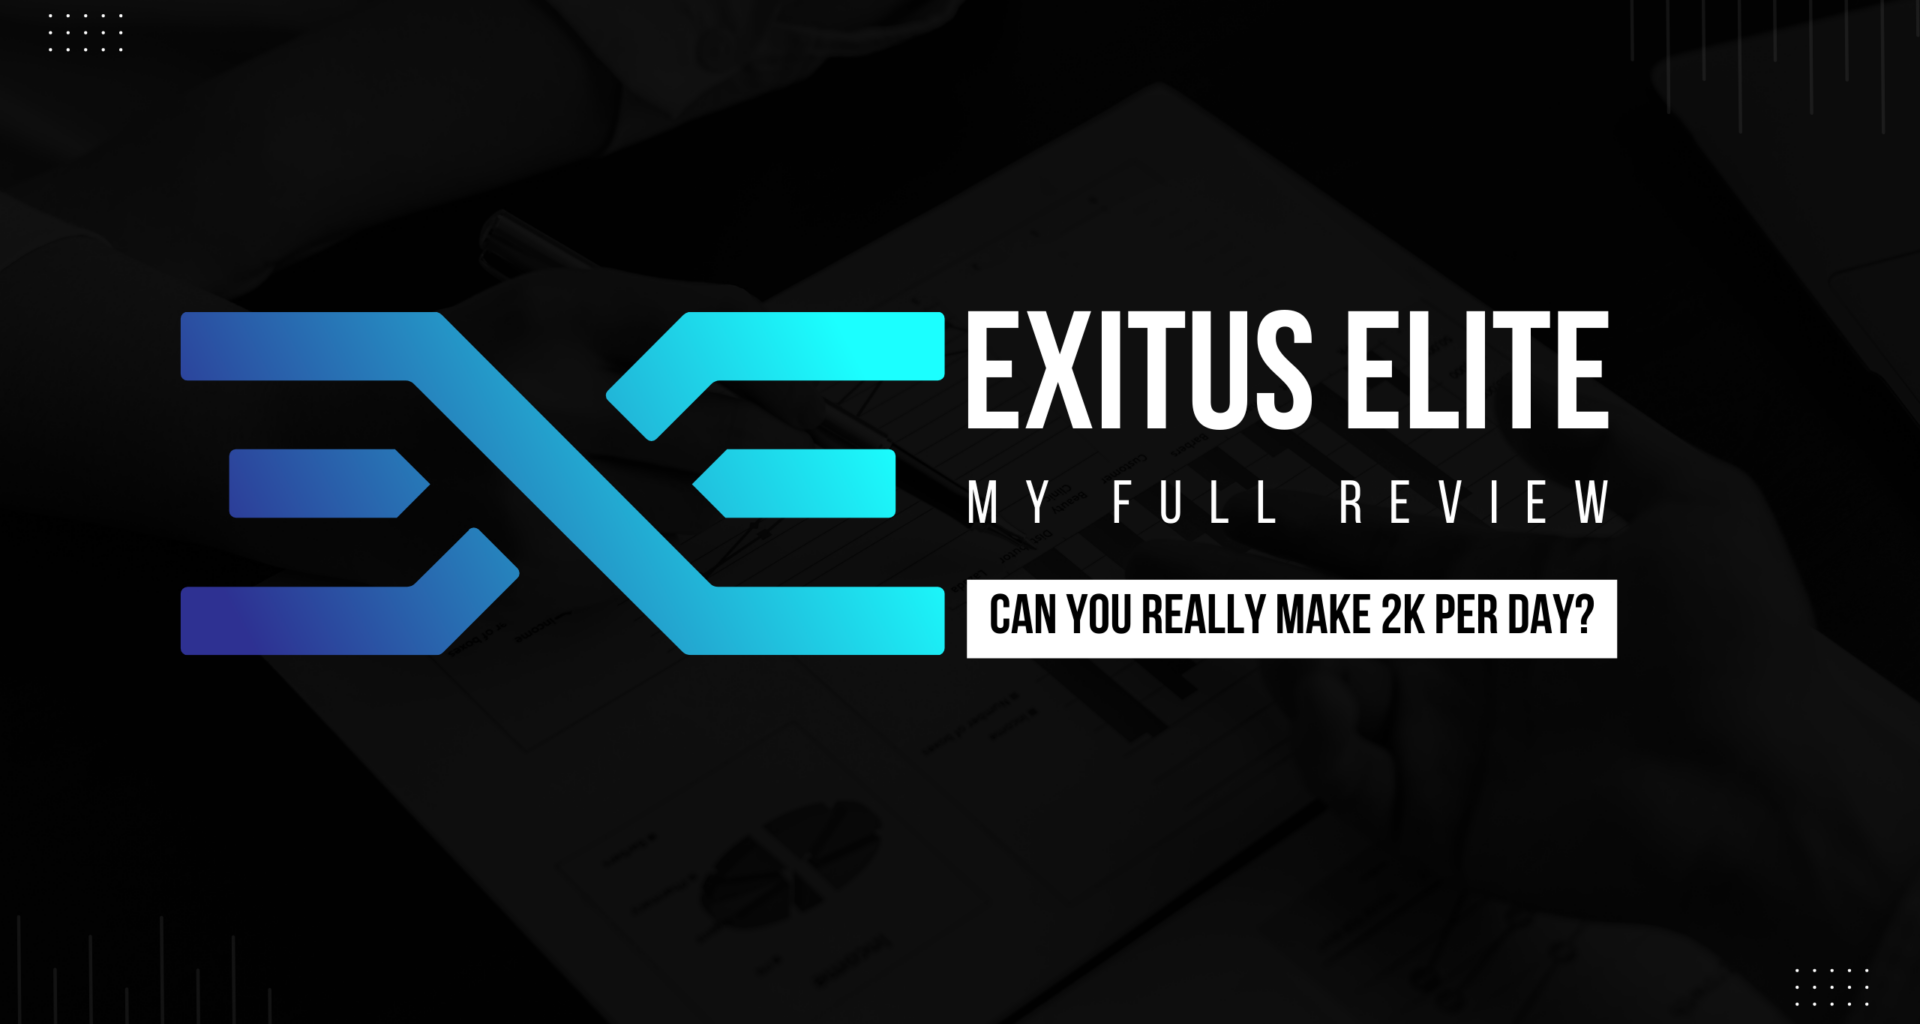 Exitus Elite Affiliate Program Review